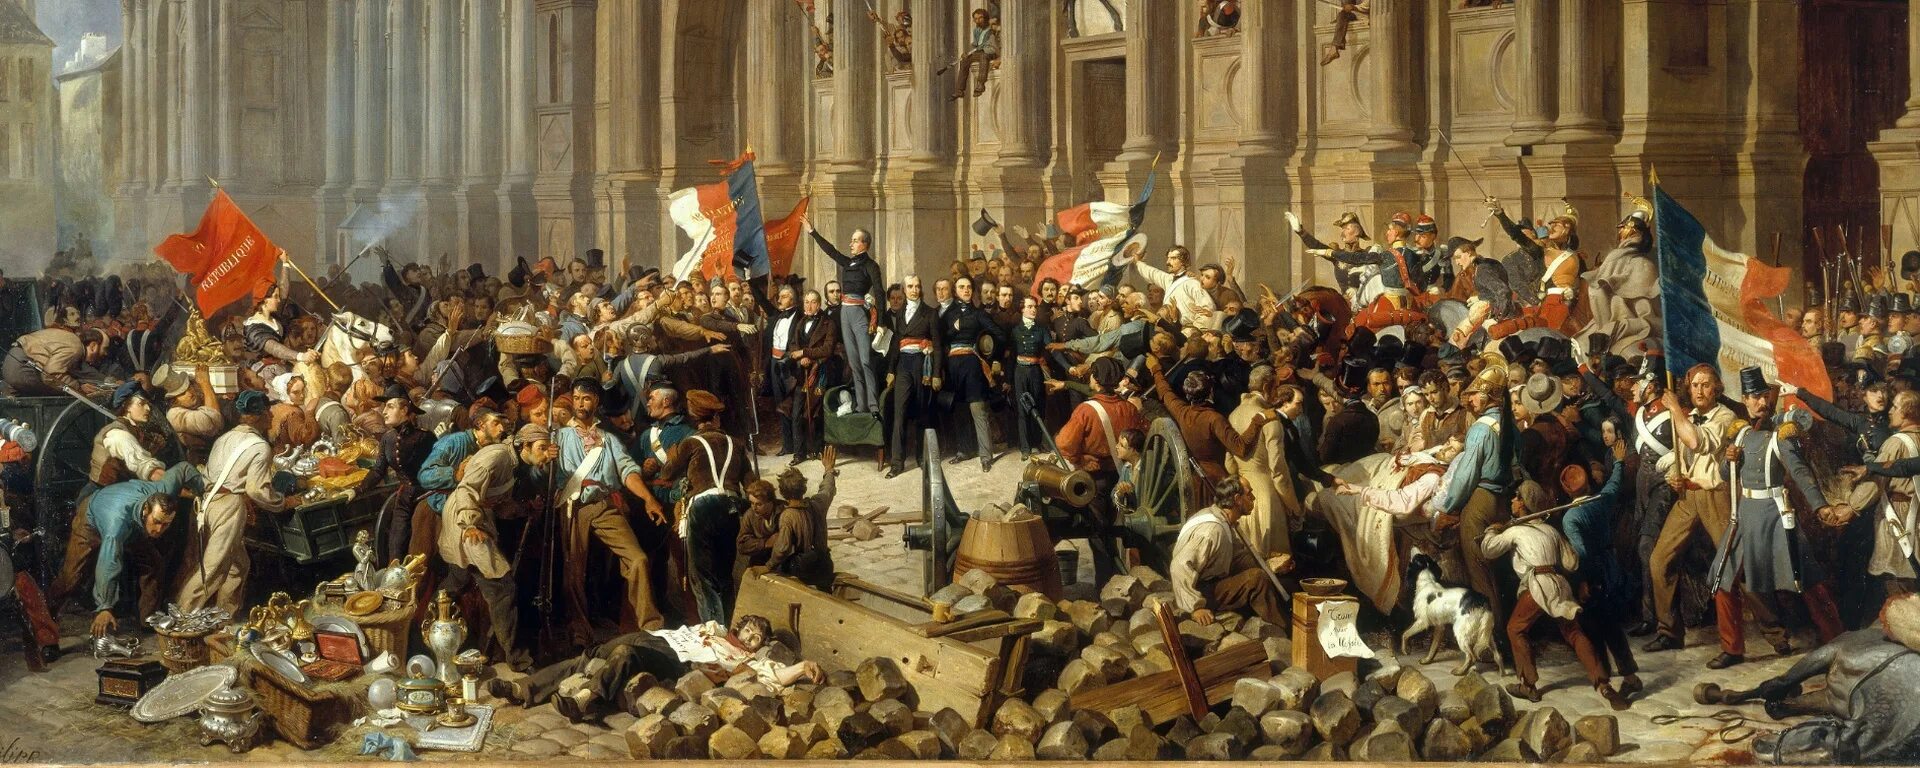 Происходившими в европе в конце. Германский национализм 19 век. Германская революция 1848. Революция 1848 года во Франции. Буржуазная революция в Германии.